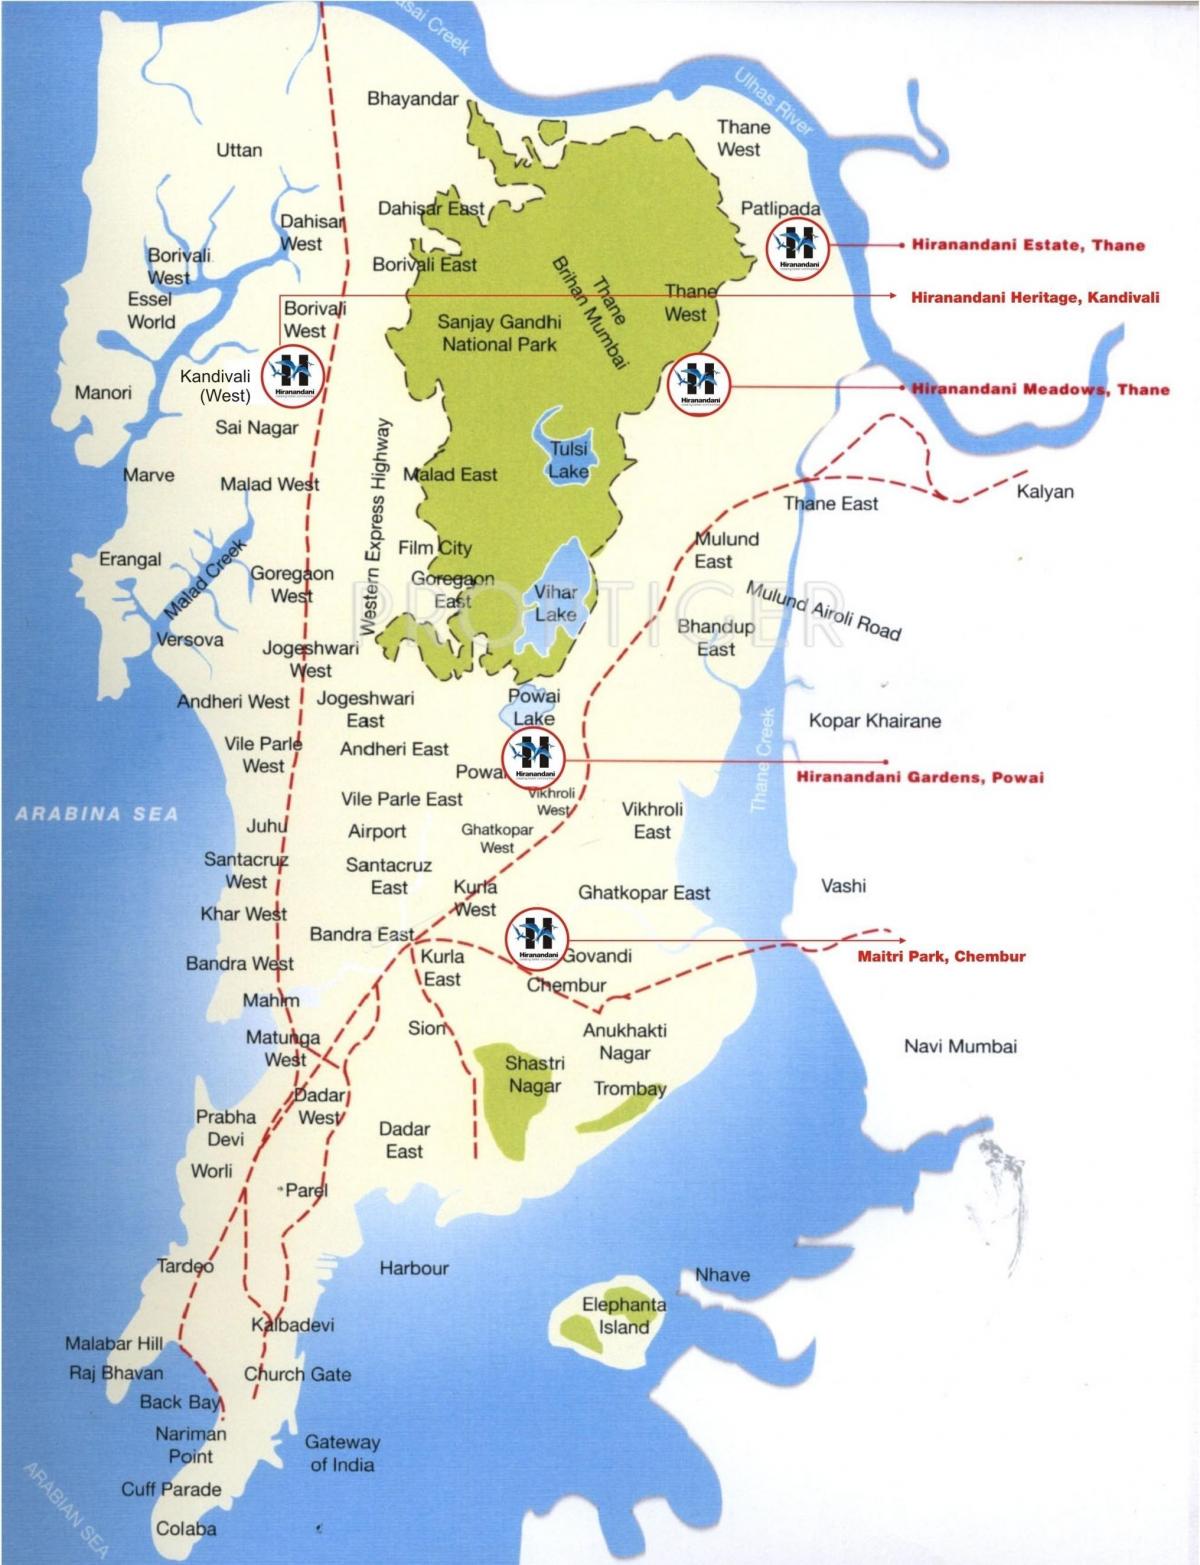 地図のムンバイのコラバ地区